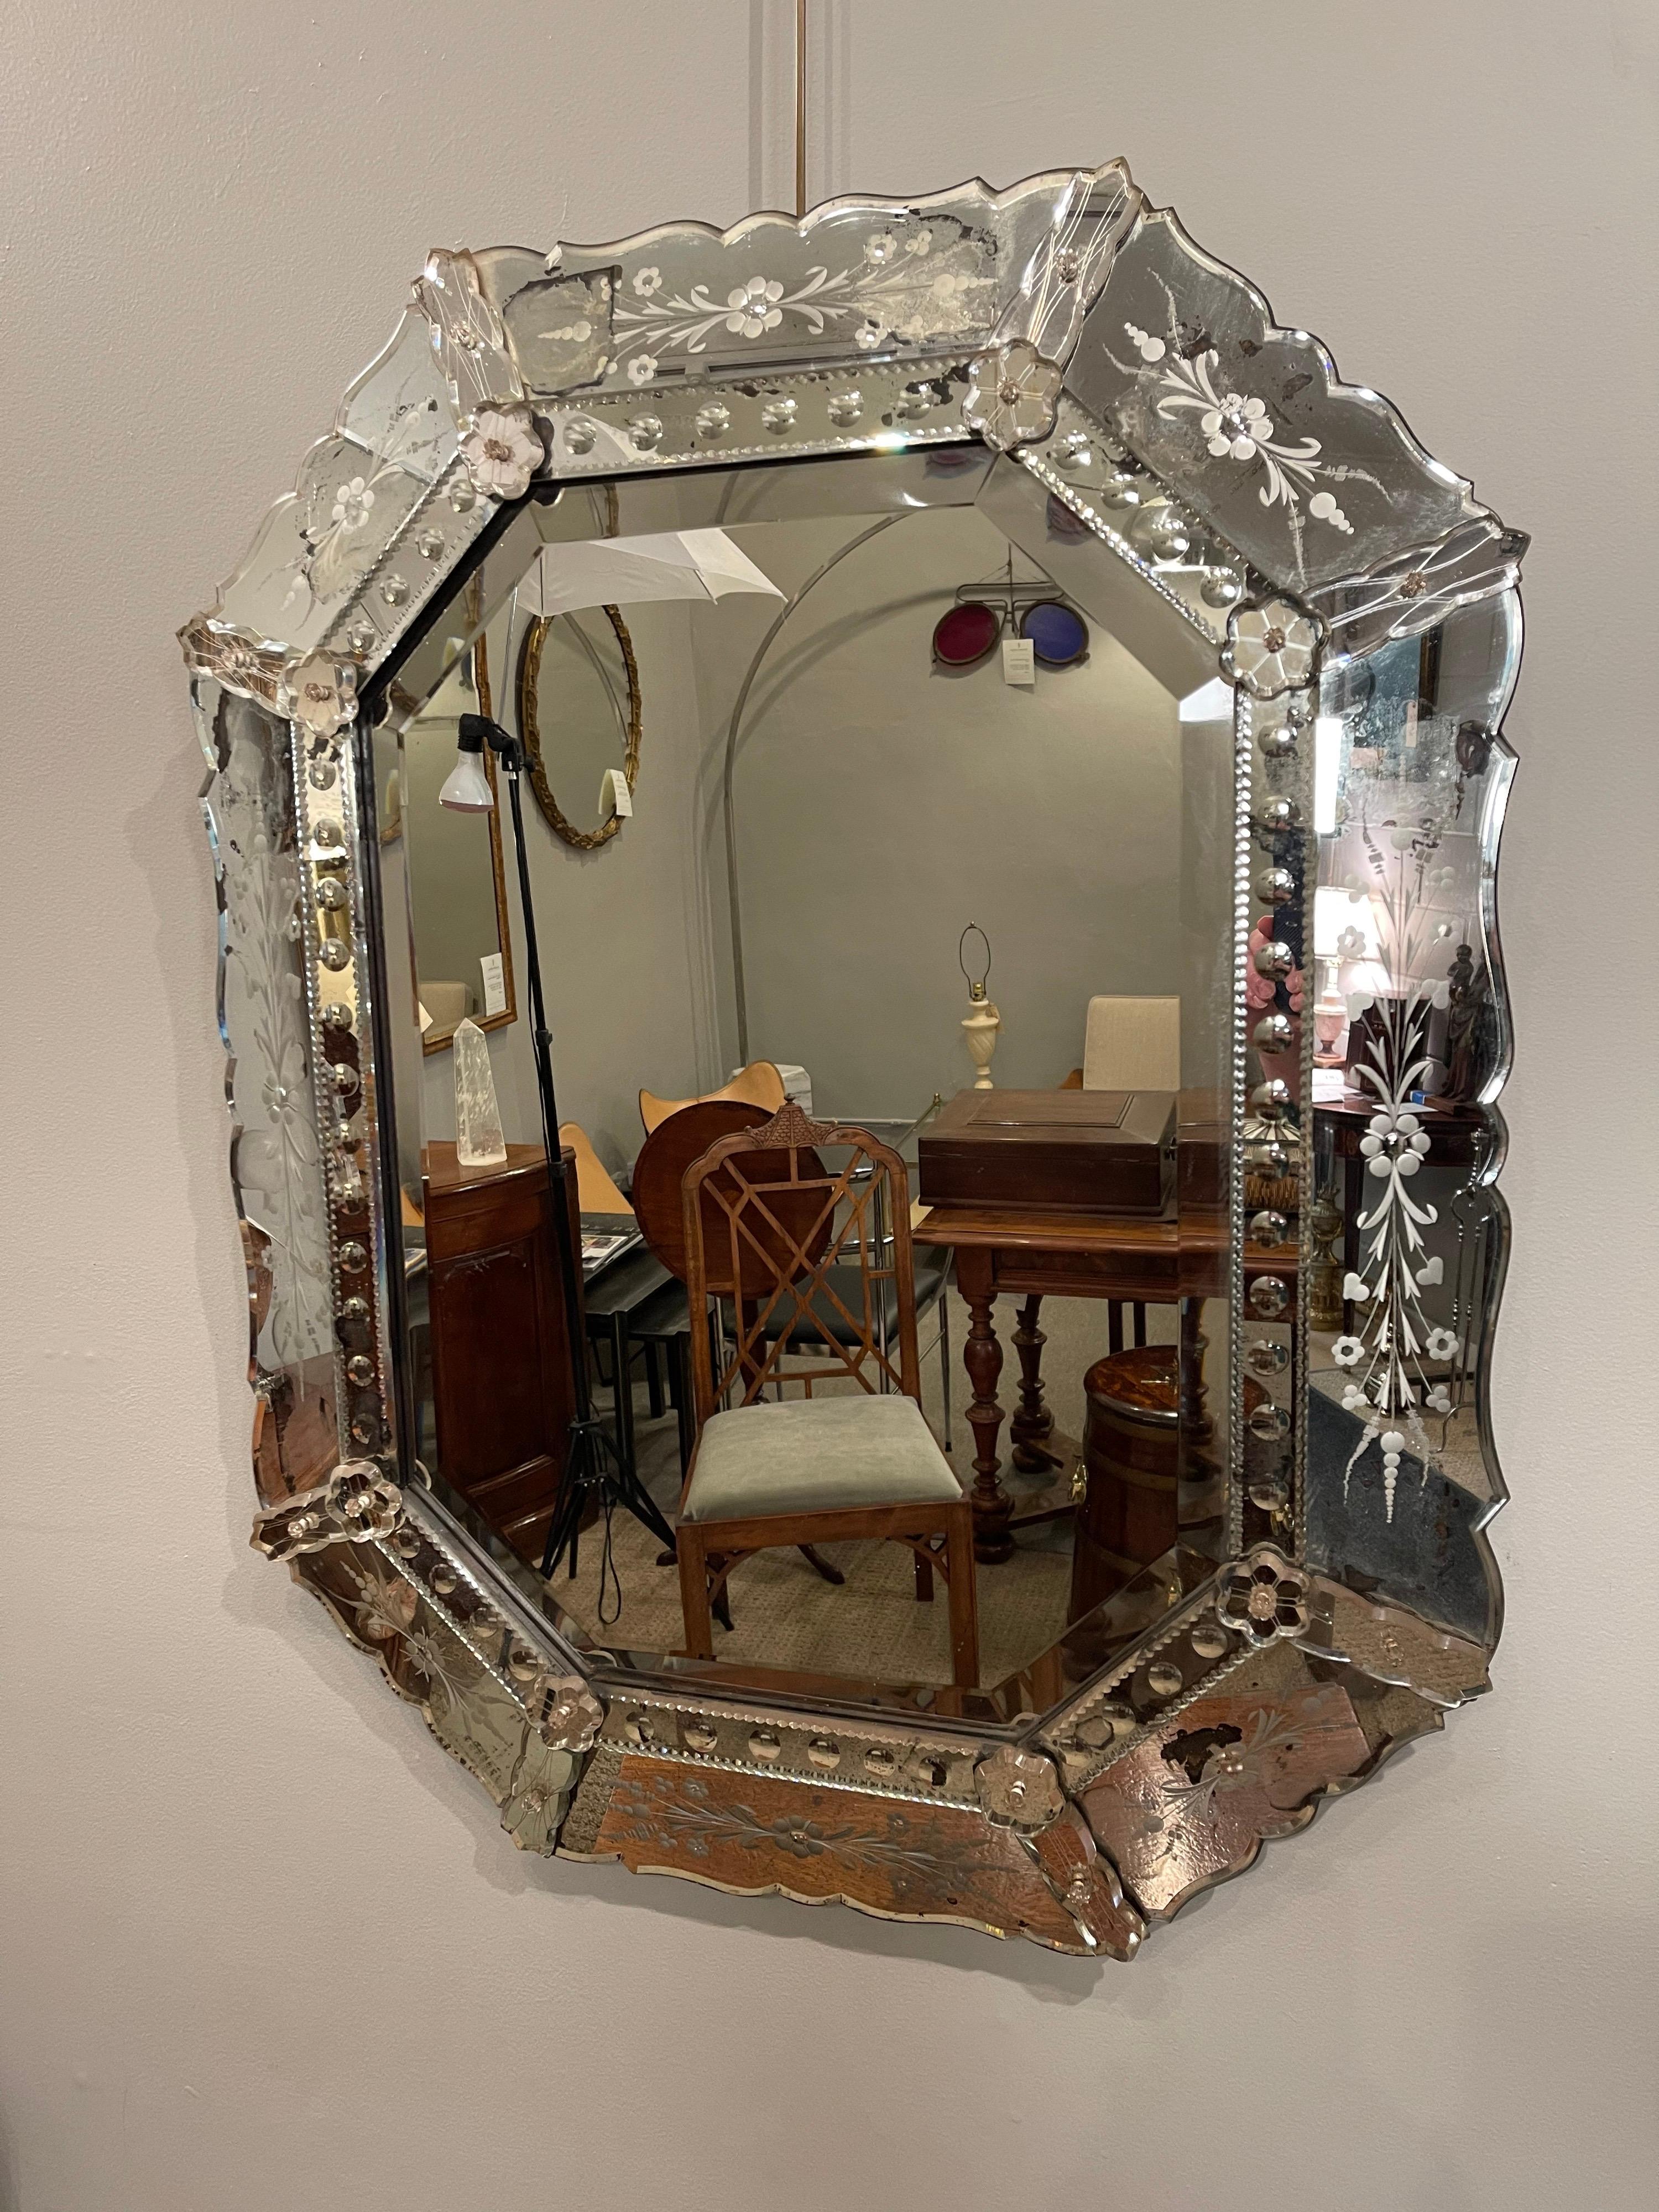 Kleiner venezianischer Spiegel, frühes 20. Jahrhundert, mit abgeschrägter zentraler Spiegelplatte, umgeben von geätzten und versilberten Seitenteilen, die mit Rosetten befestigt sind.